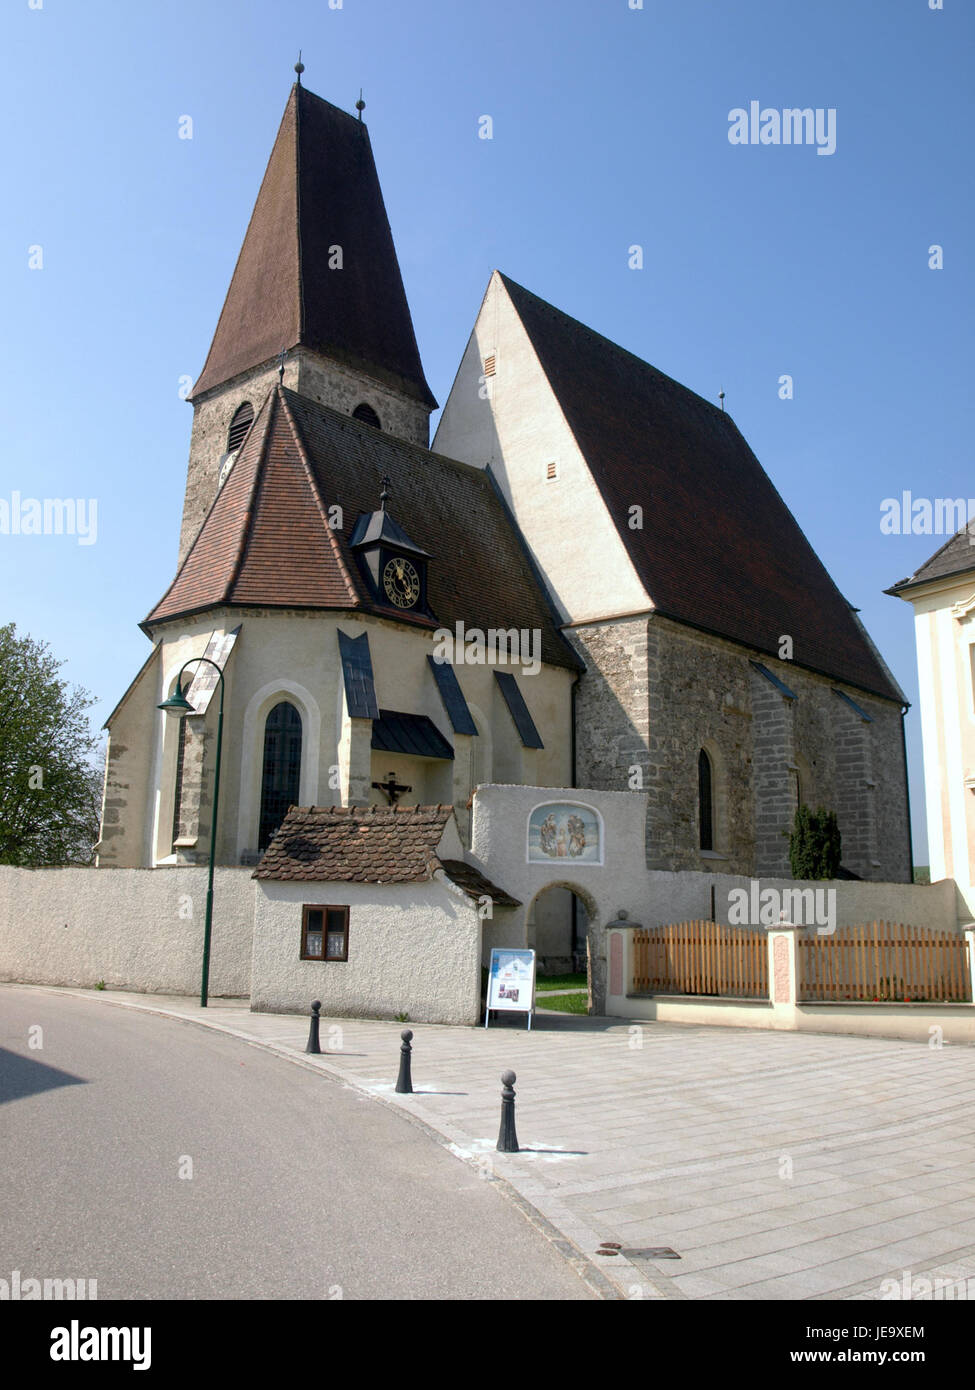 2013.04.24 - Haidershofen - Pfarrkirche hl. Severin und Friedhof - 02 Stock Photo